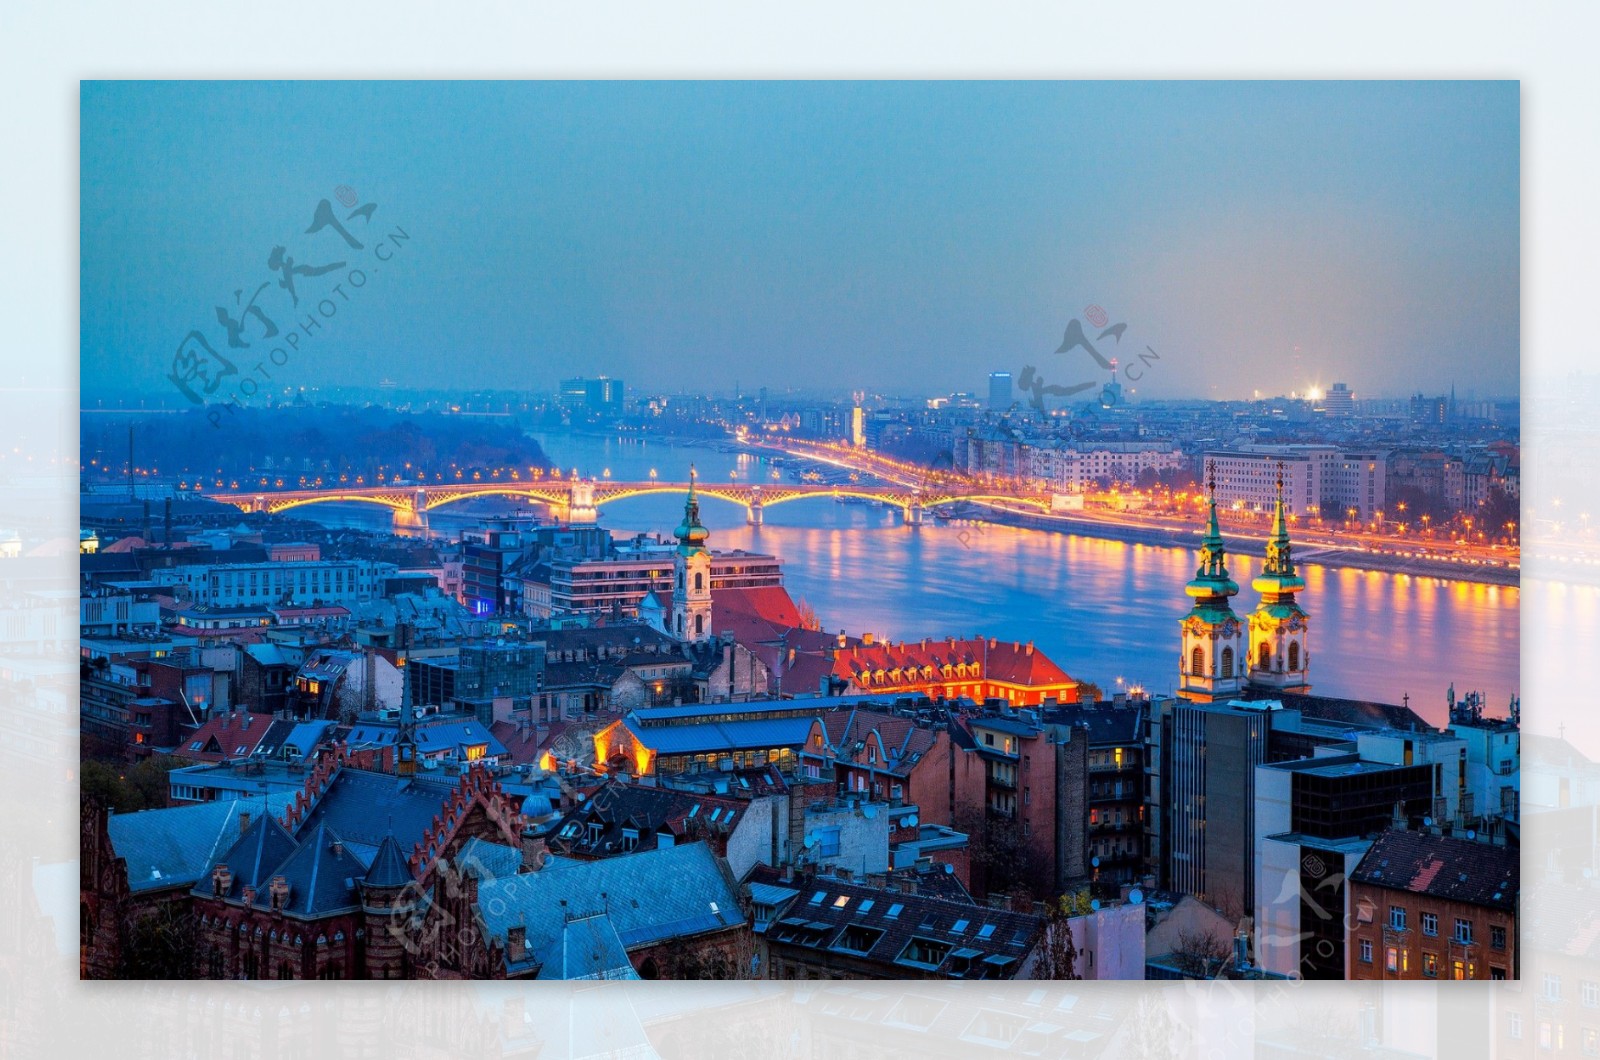 俯视匈牙利夜景图片